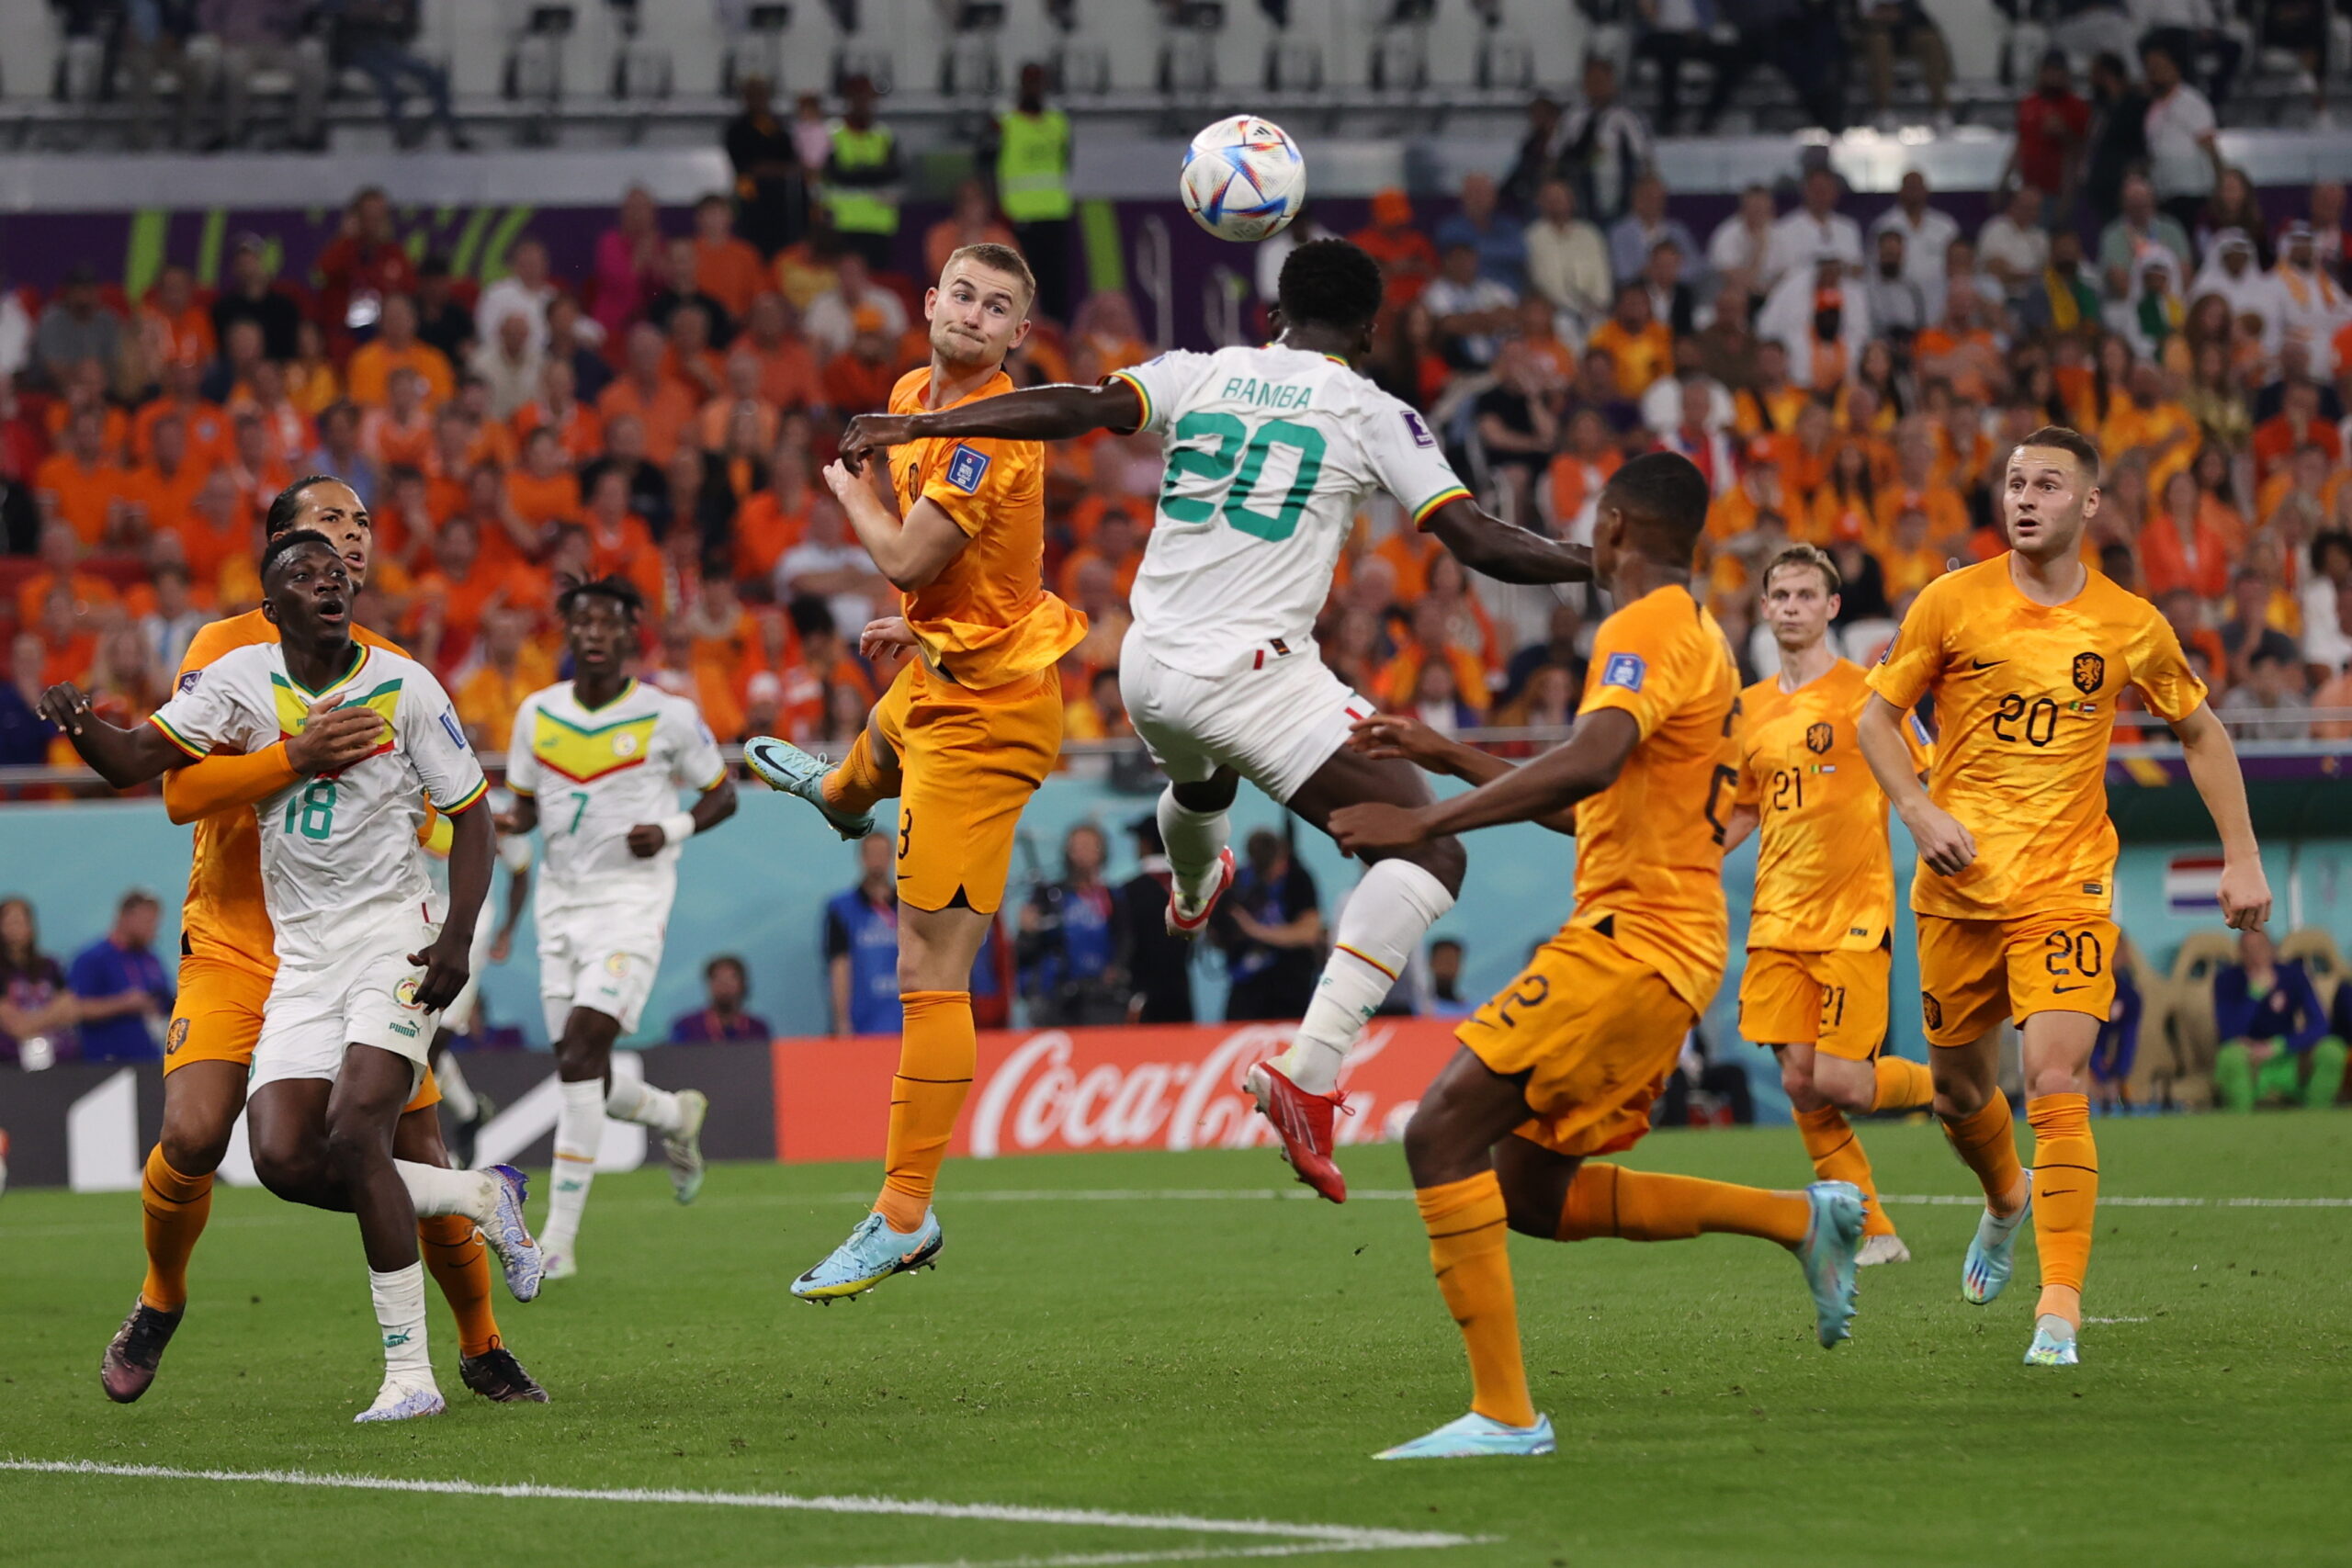 Σενεγάλη - Ολλανδία 0-2: Ο ασταμάτητος Χάκπο κι ο Κλάασεν λύτρωσαν τους Οράνιε στο τέλος